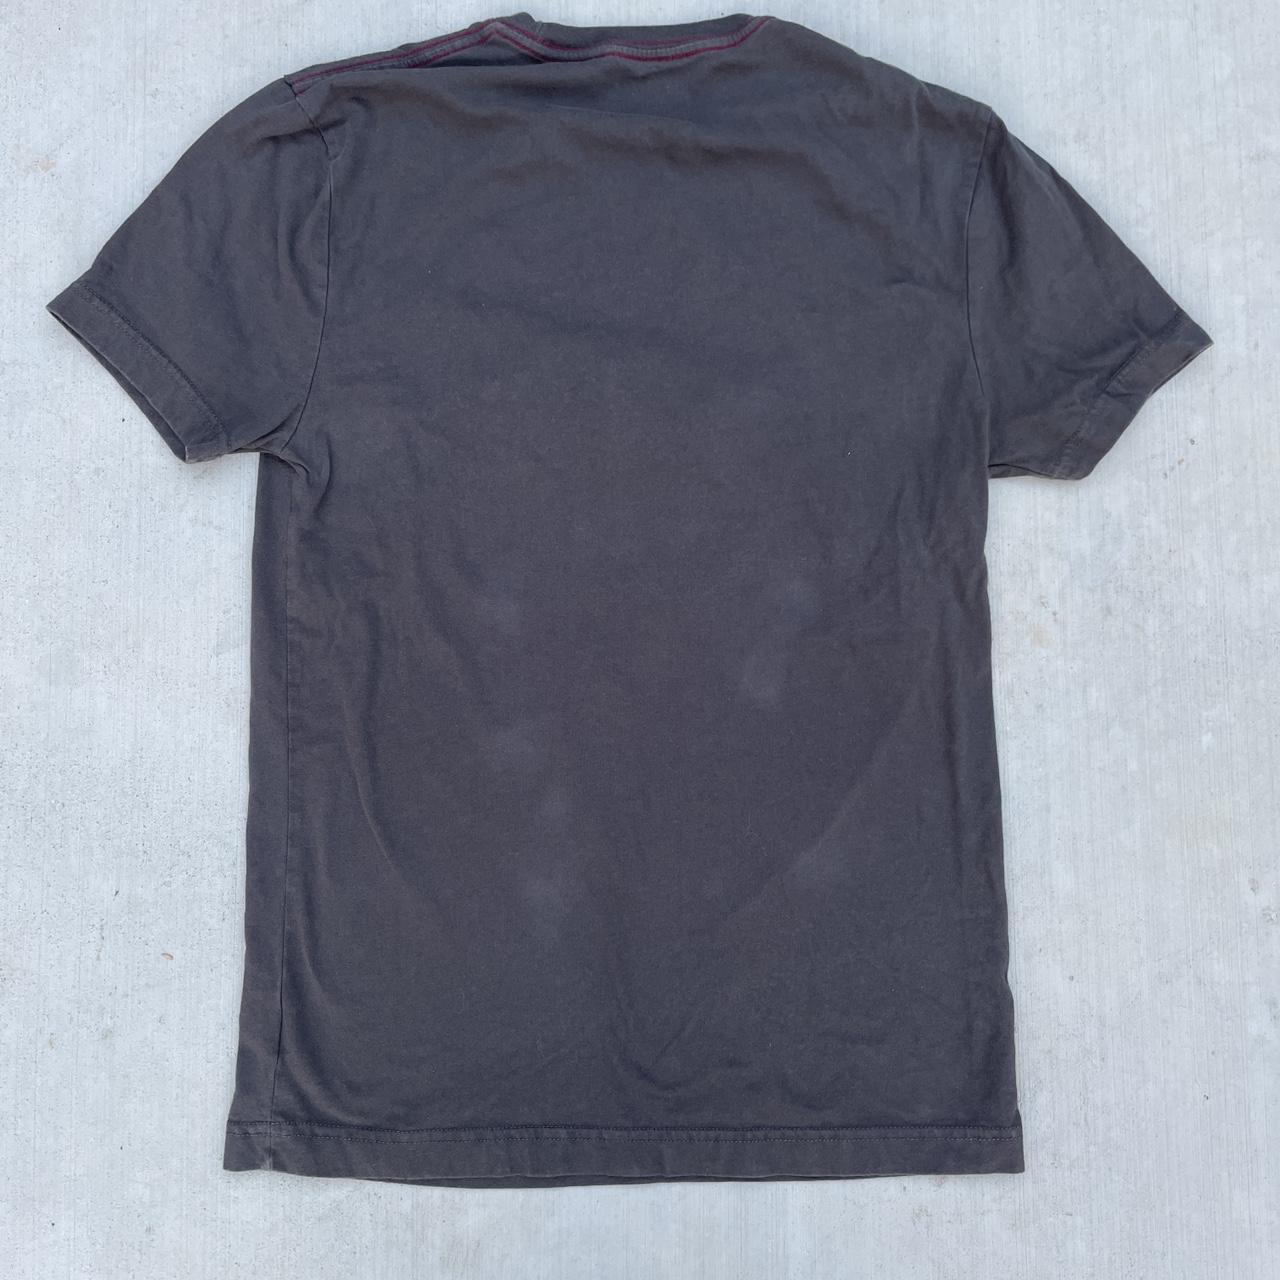 Black Hard Rock Lake Tahoe Graphic T-Shirt - Men’s... - Depop